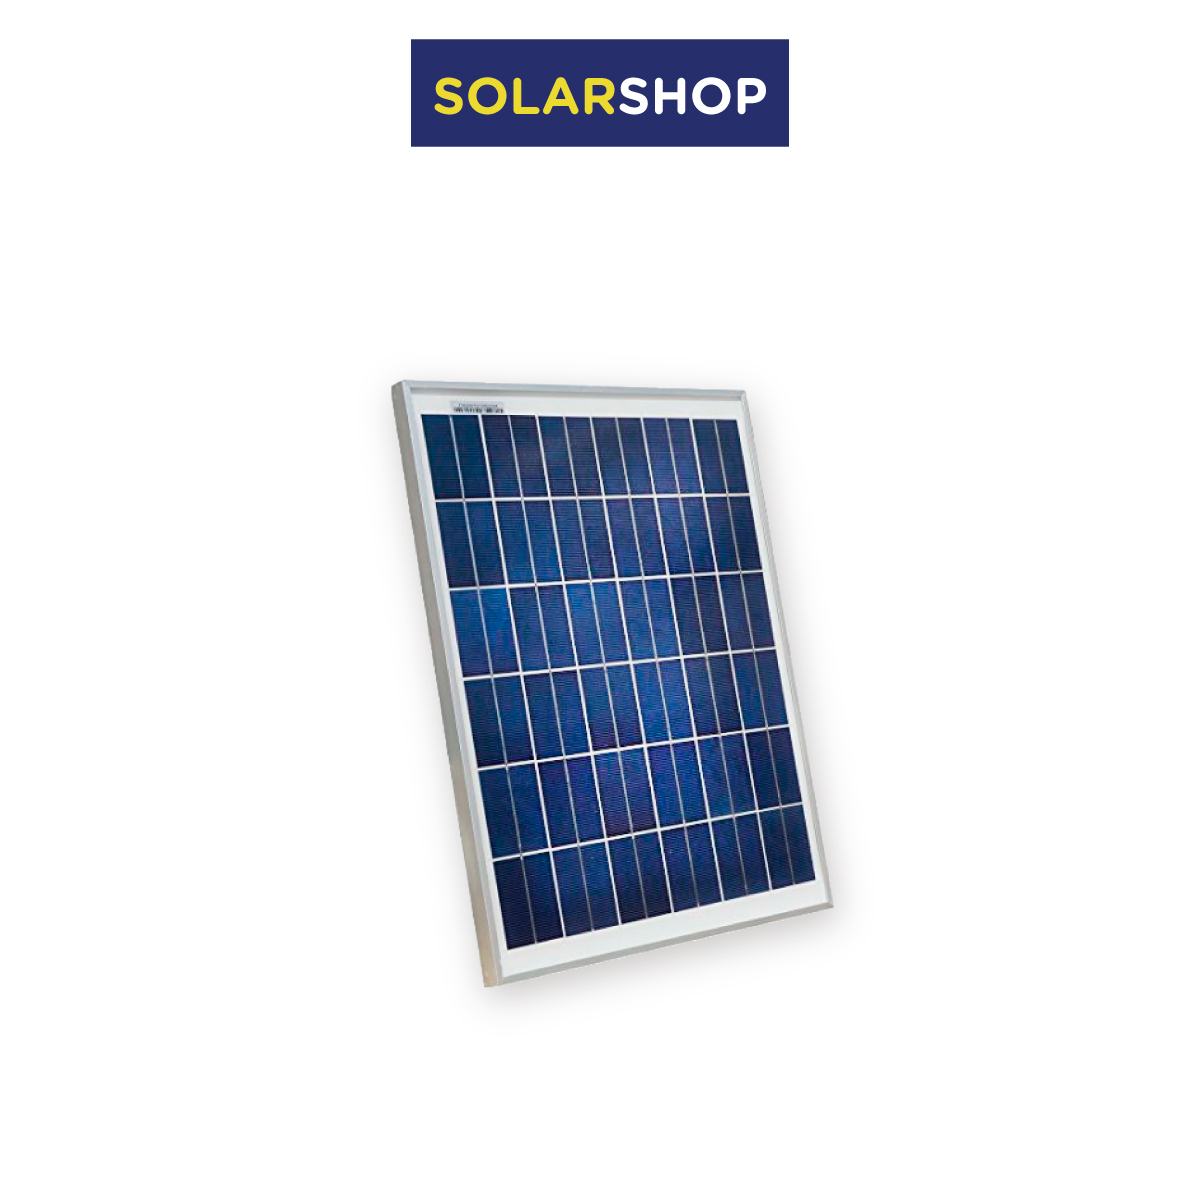 Solarshop Tienda en línea de Productos de iluminación LED, Energía Solar y  Movilidad Eléctrica de última generación, Medellin, Colombia